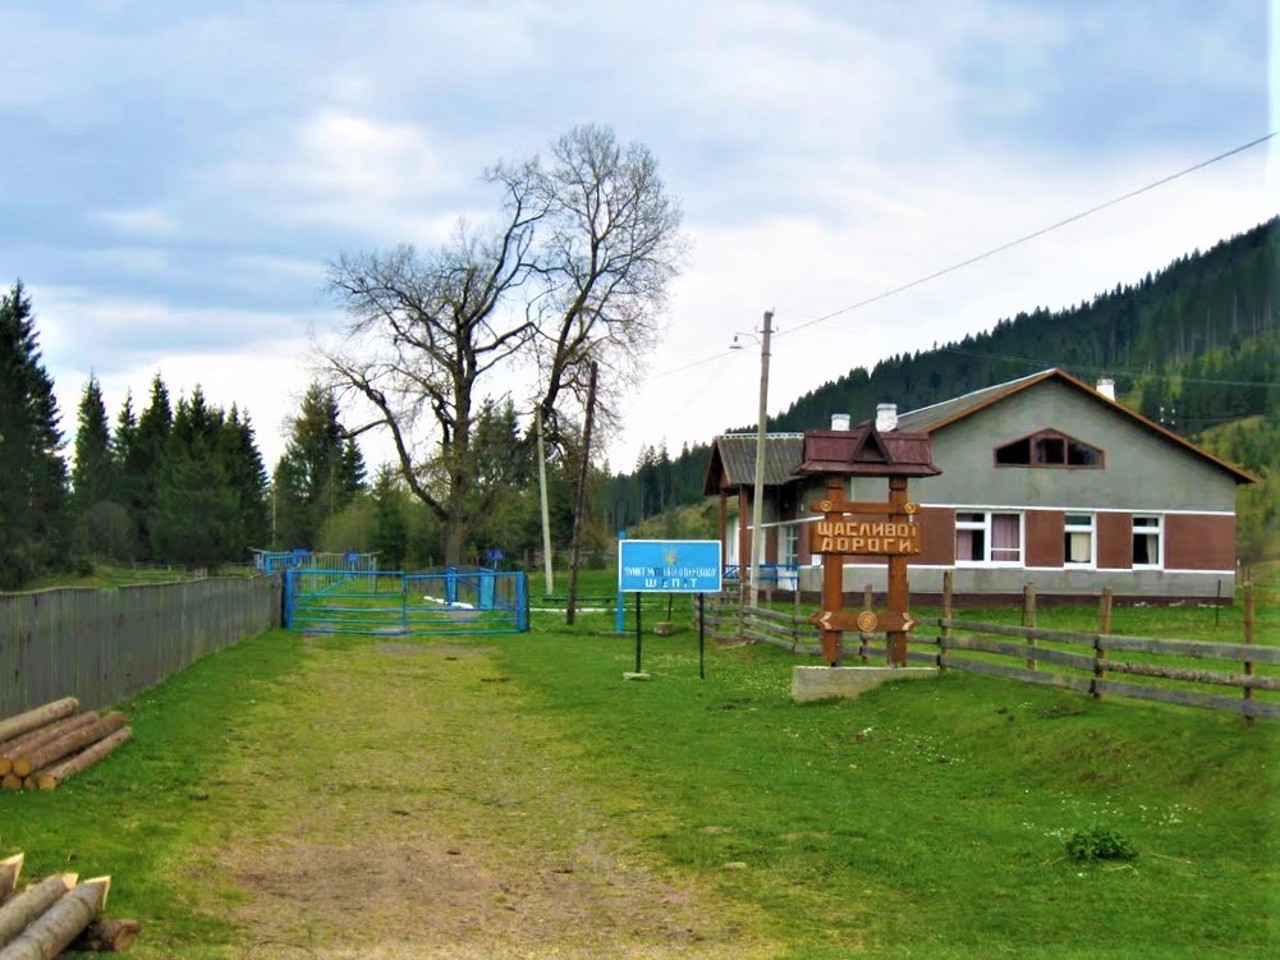 Shepit village, Vyzhnytskyi district